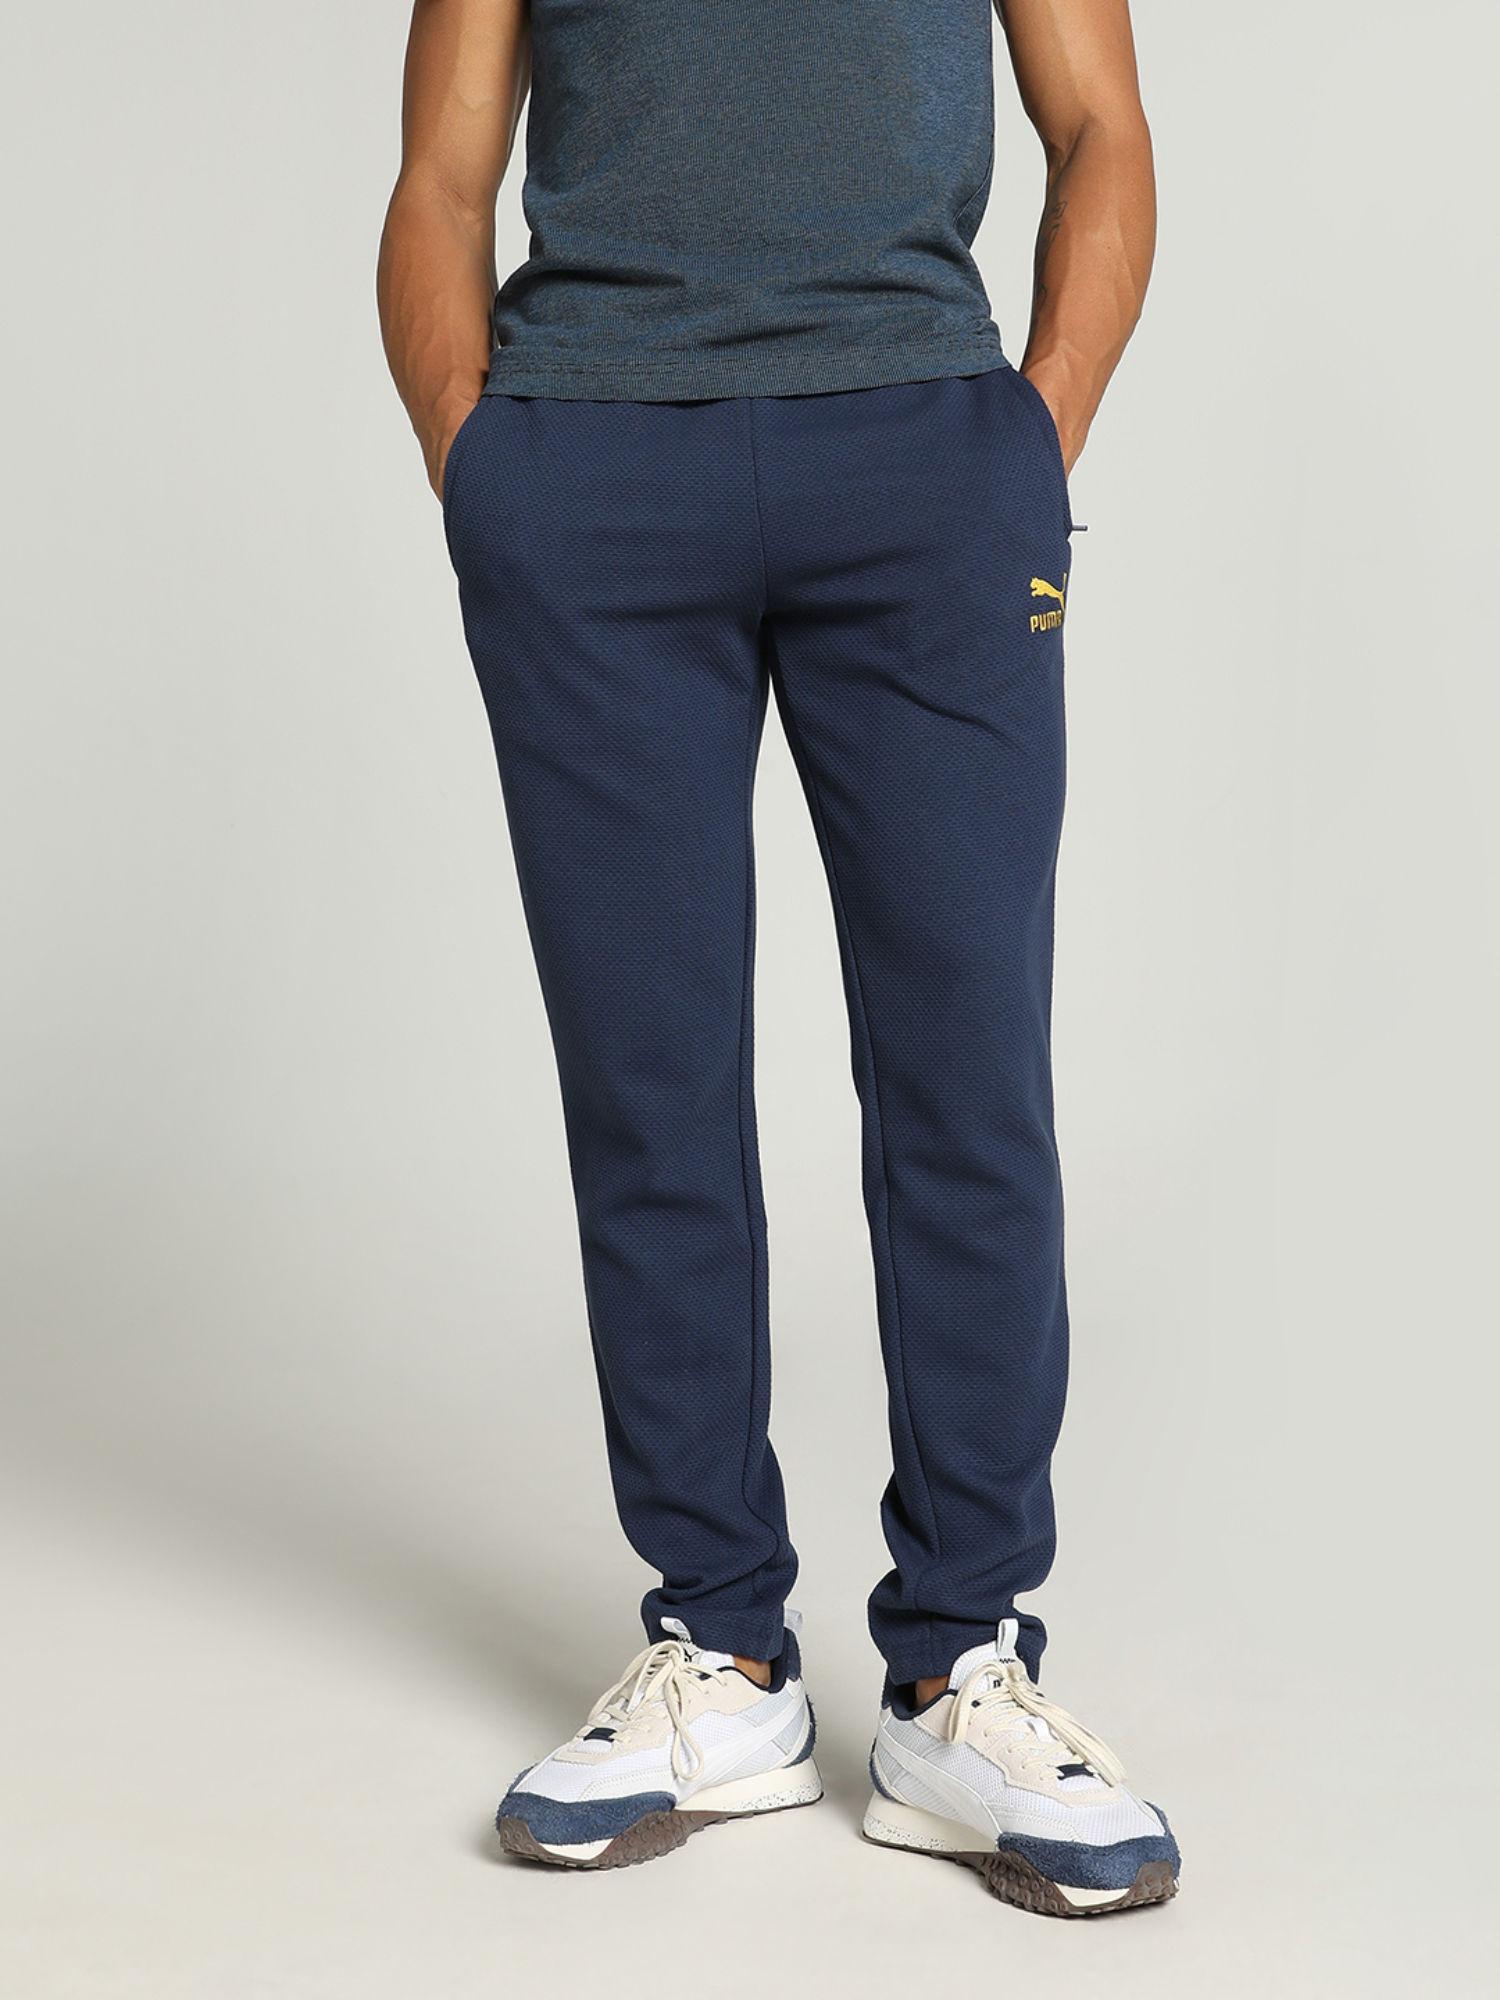 classics jacquard men navy blue sweatpants